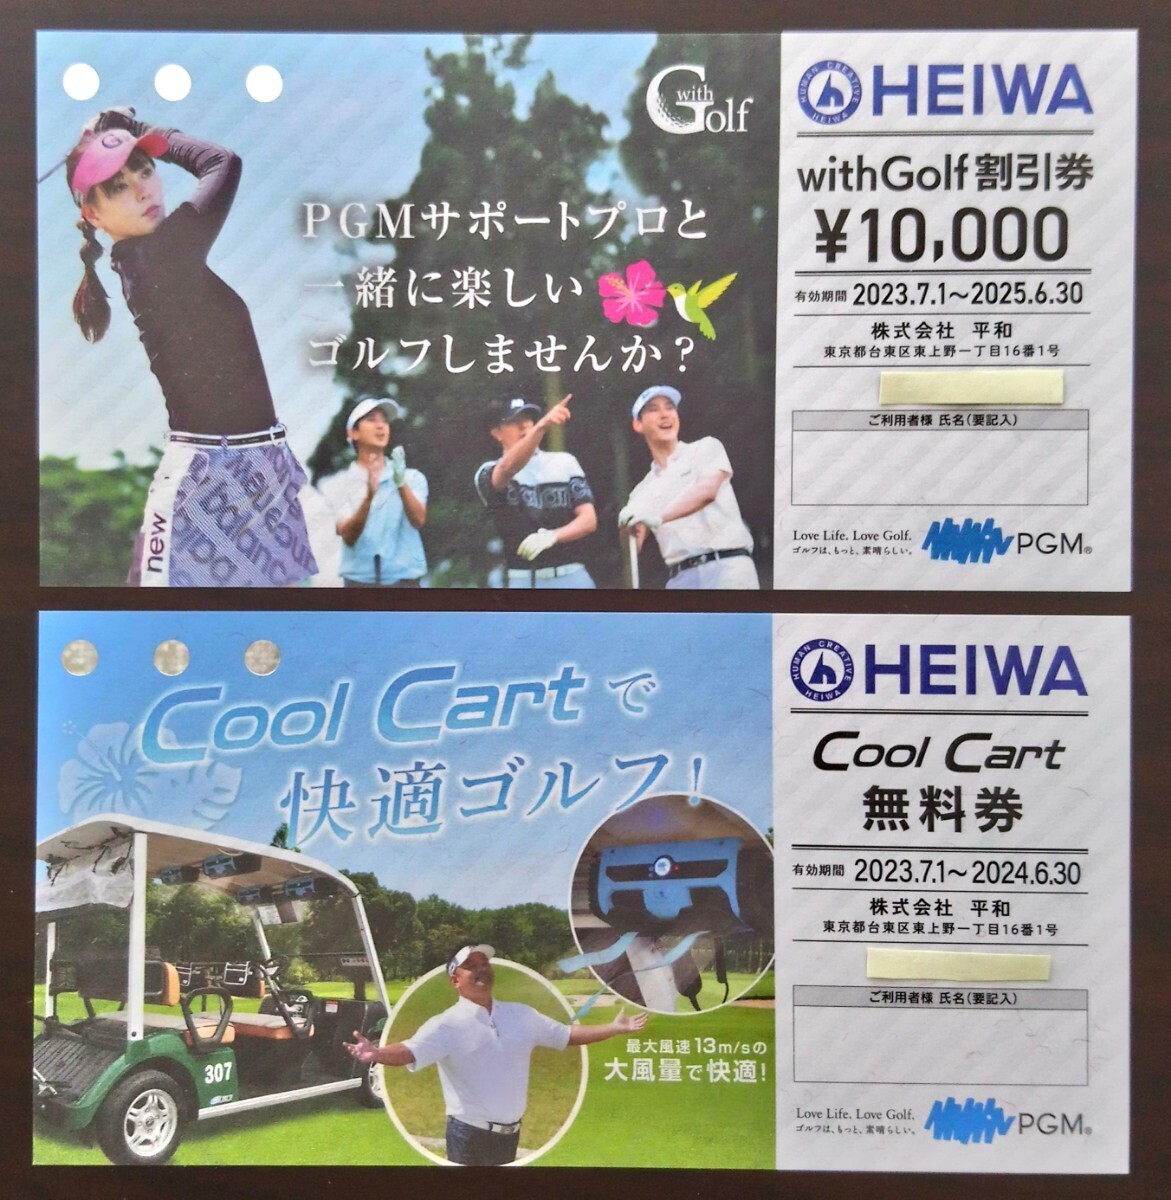 【送料無料】平和(PGM) 「Cool Cart 無料券」「with Golf 割引券」の画像1